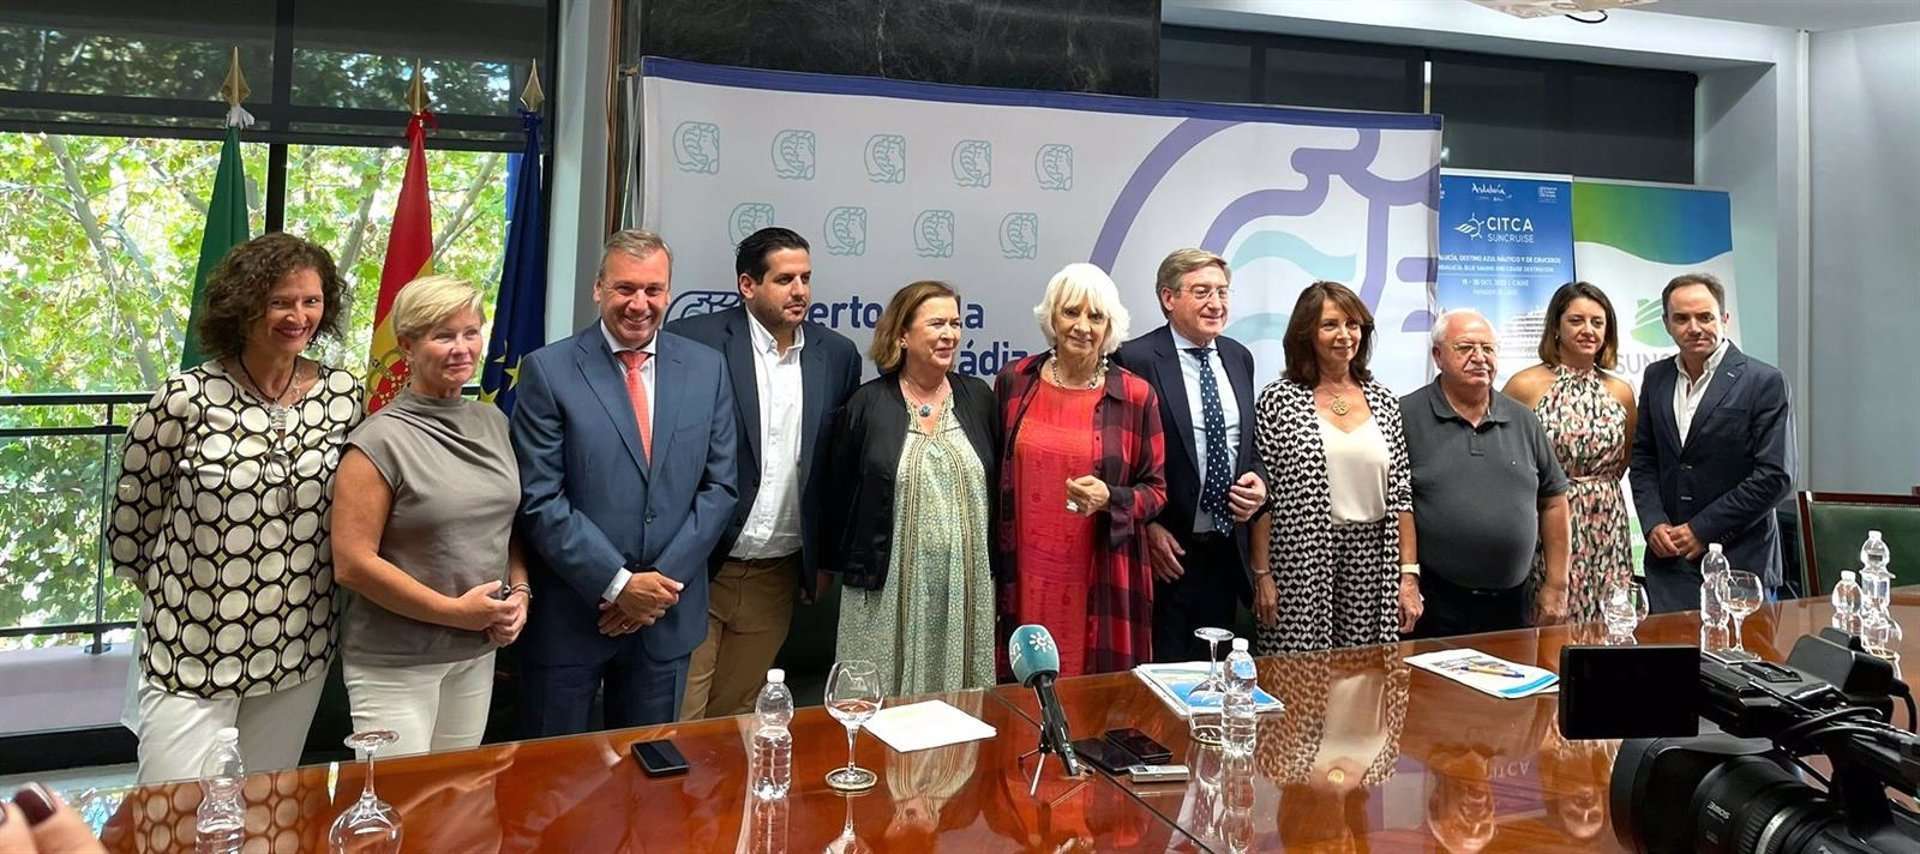 Bajo el lema 'Andalucía, destino azul náutico y de cruceros', el Congreso Internacional Citca Suncruise concentra a más de 40 expertos internacionales en Cádiz los días 19 y 20 de octubre.